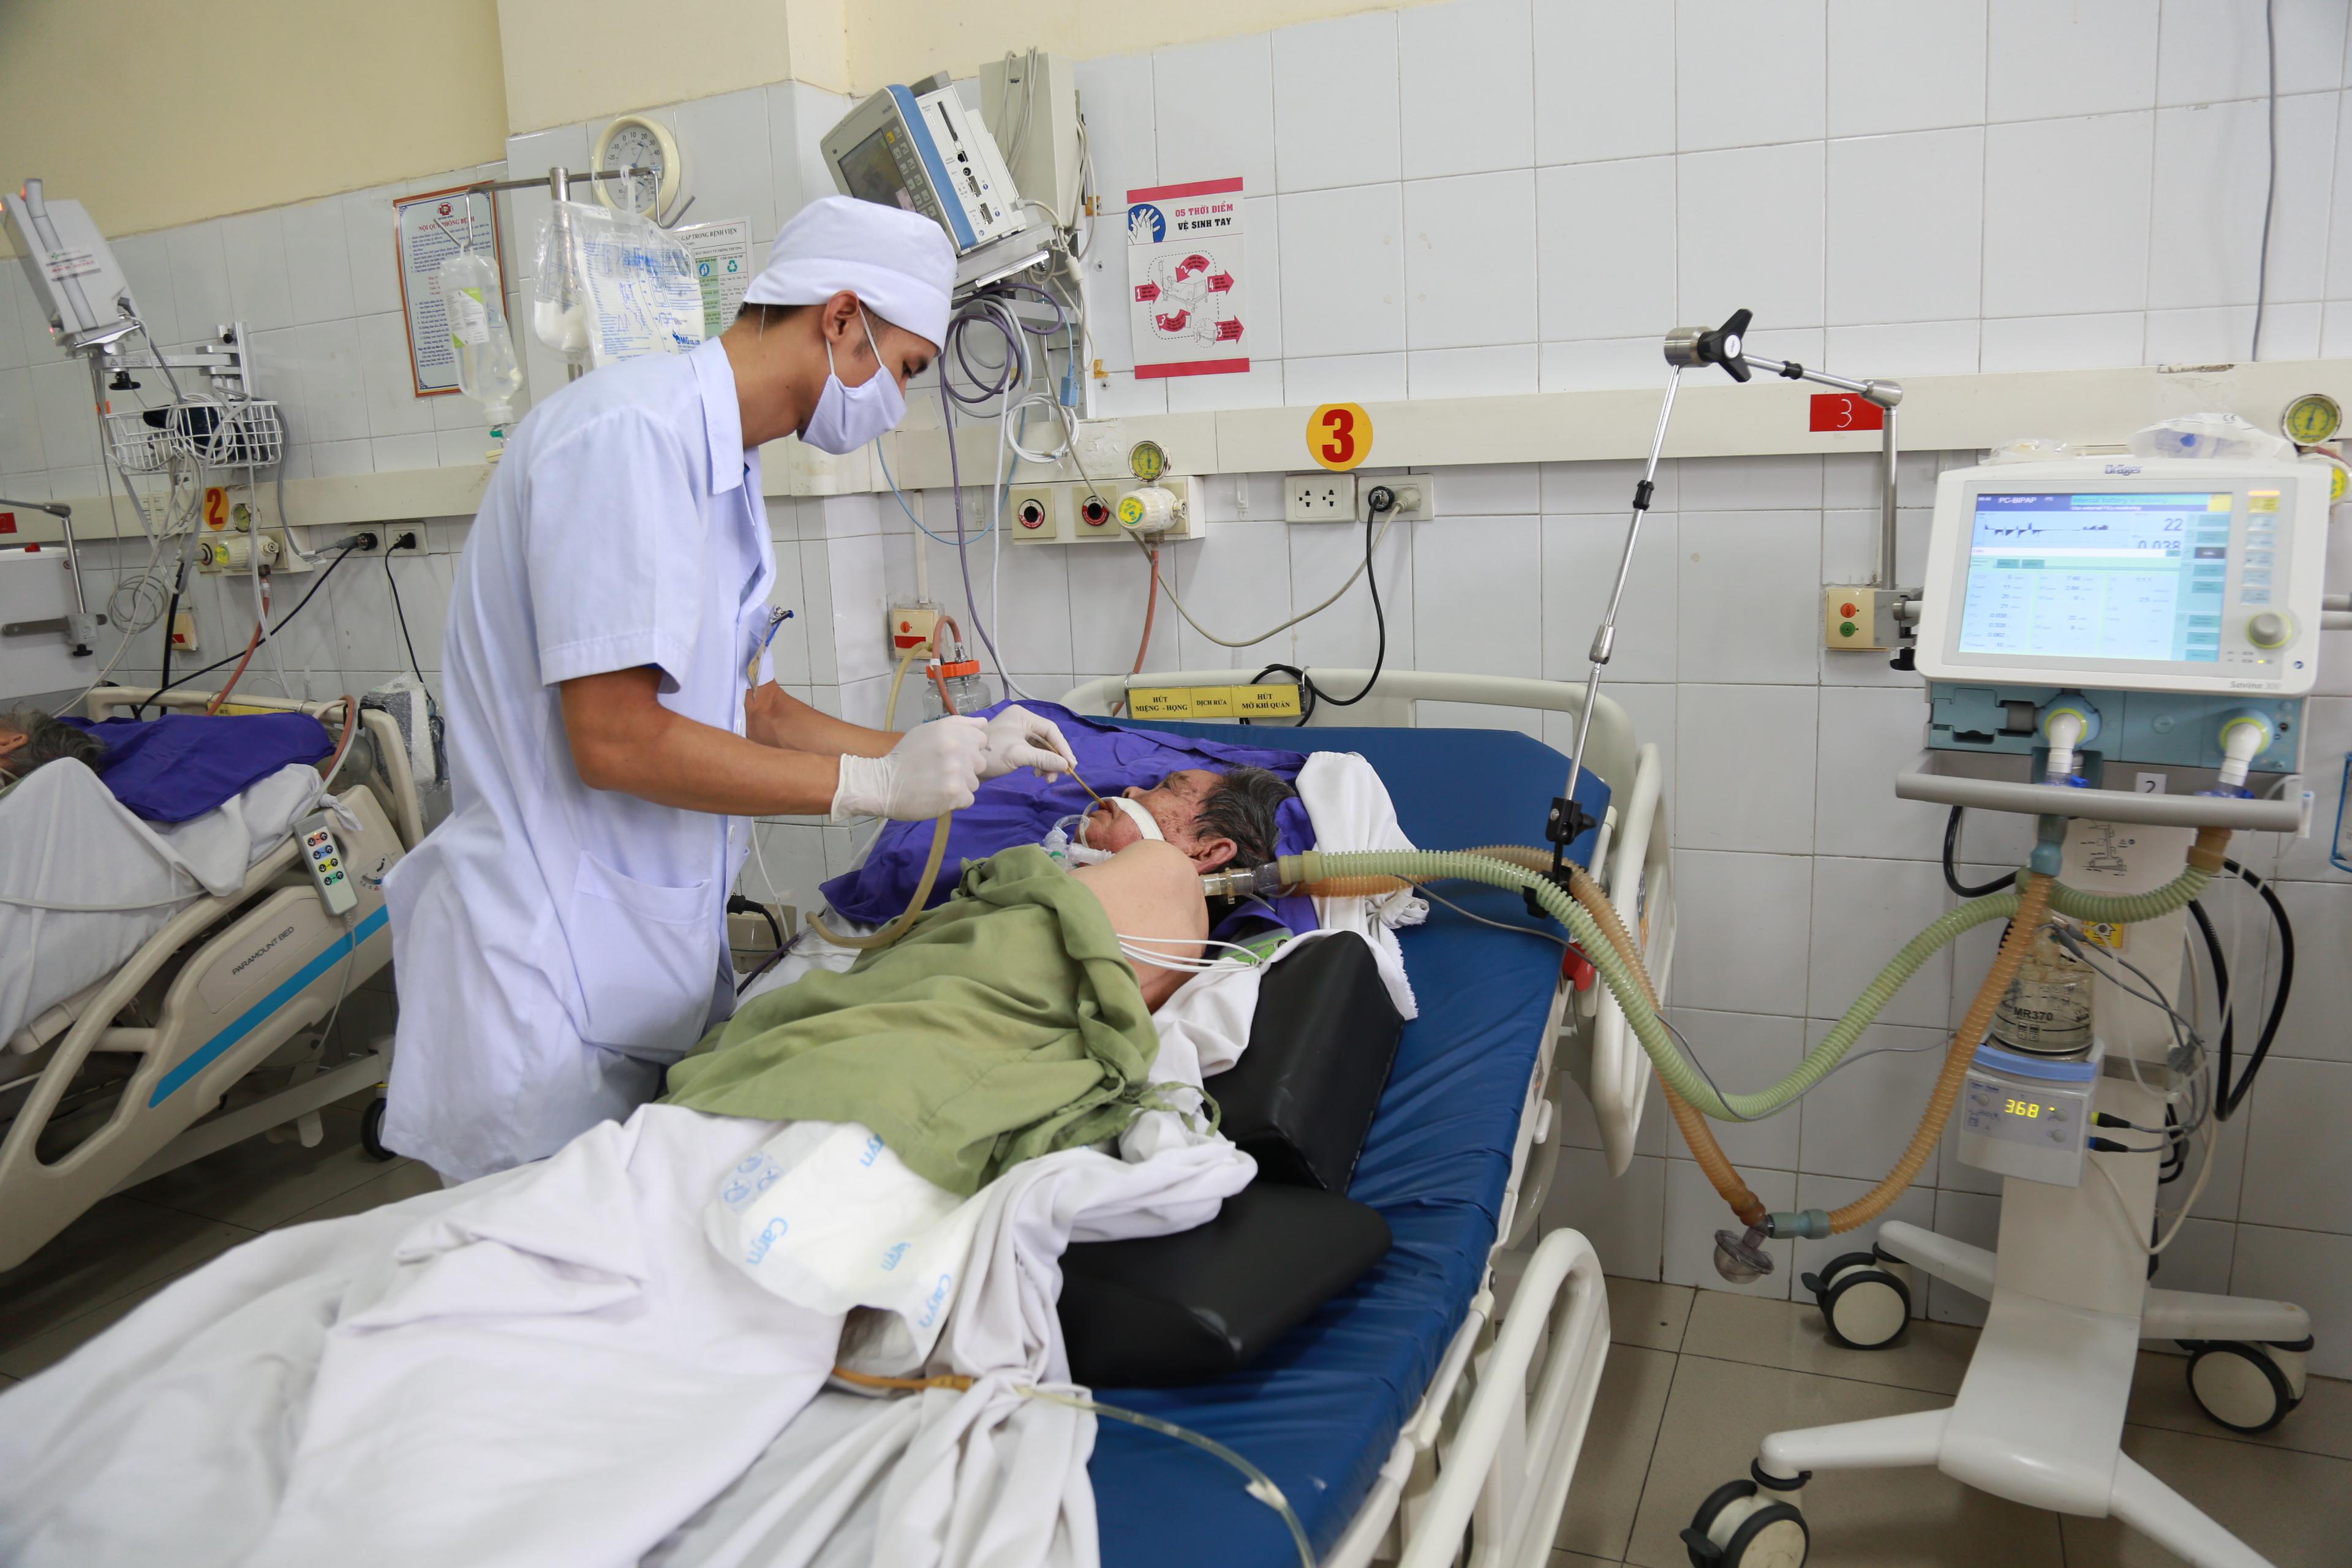 Cấp cứu bệnh suy hô hấp do viêm phổi nặng tai Bệnh viện Đa khoa tỉnh. Ảnh: Hà Trang.